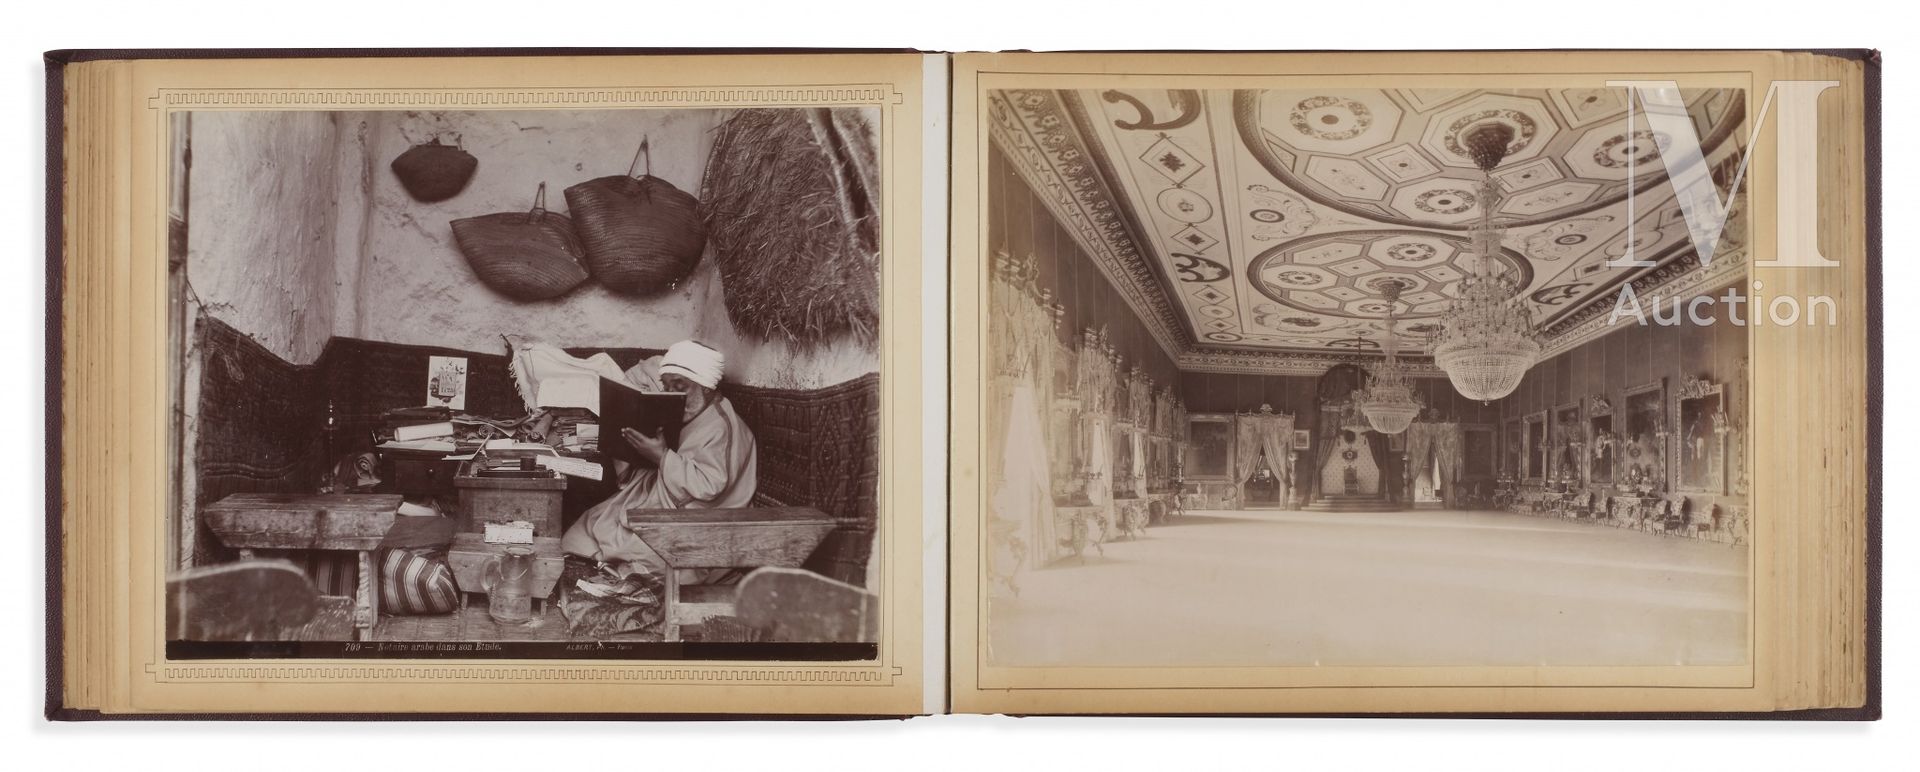 TUNISIE Álbum de fotografías

Consta de 108 grabados sobre albúmina, cuyos temas&hellip;